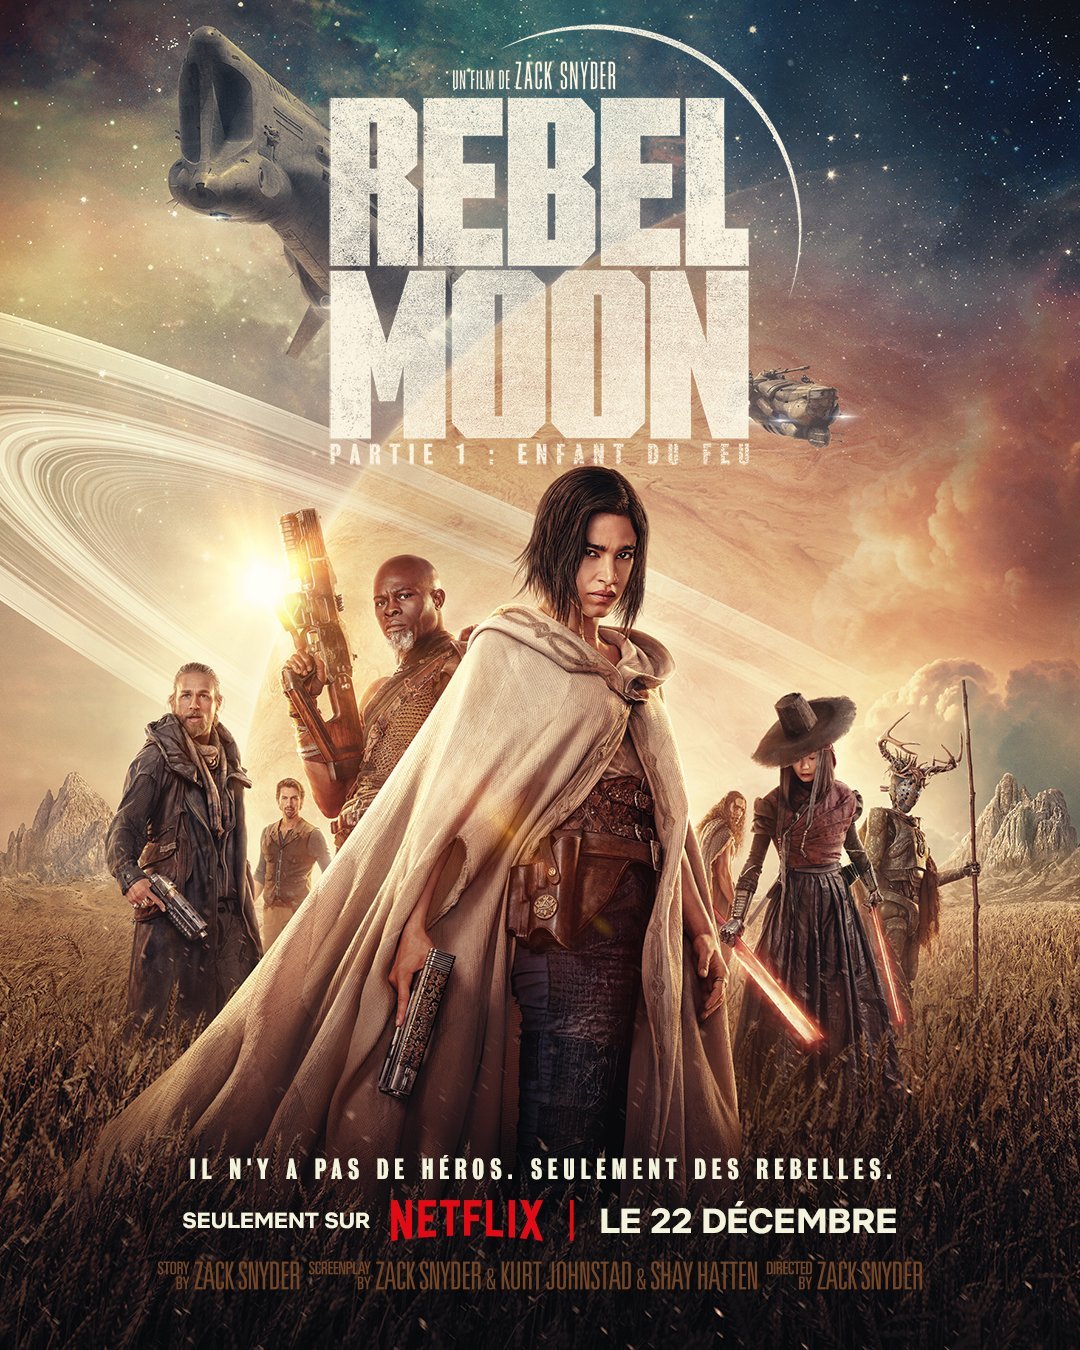 Rebel Moon: Partie 1 - Enfant du feu - Film 2023 - AlloCiné